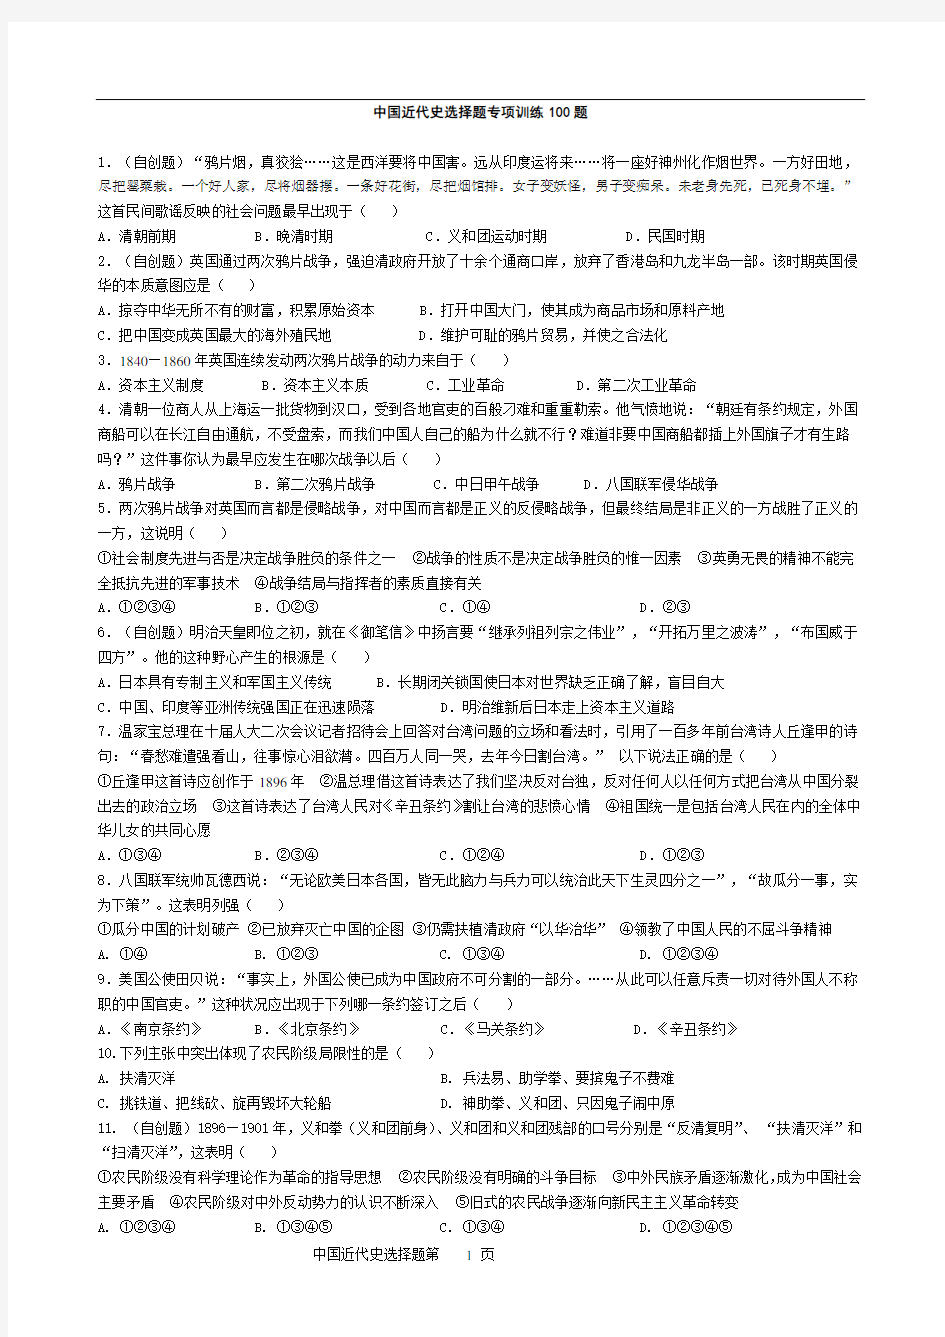 中国近代史选择题专项训练100题(详细版有答案)